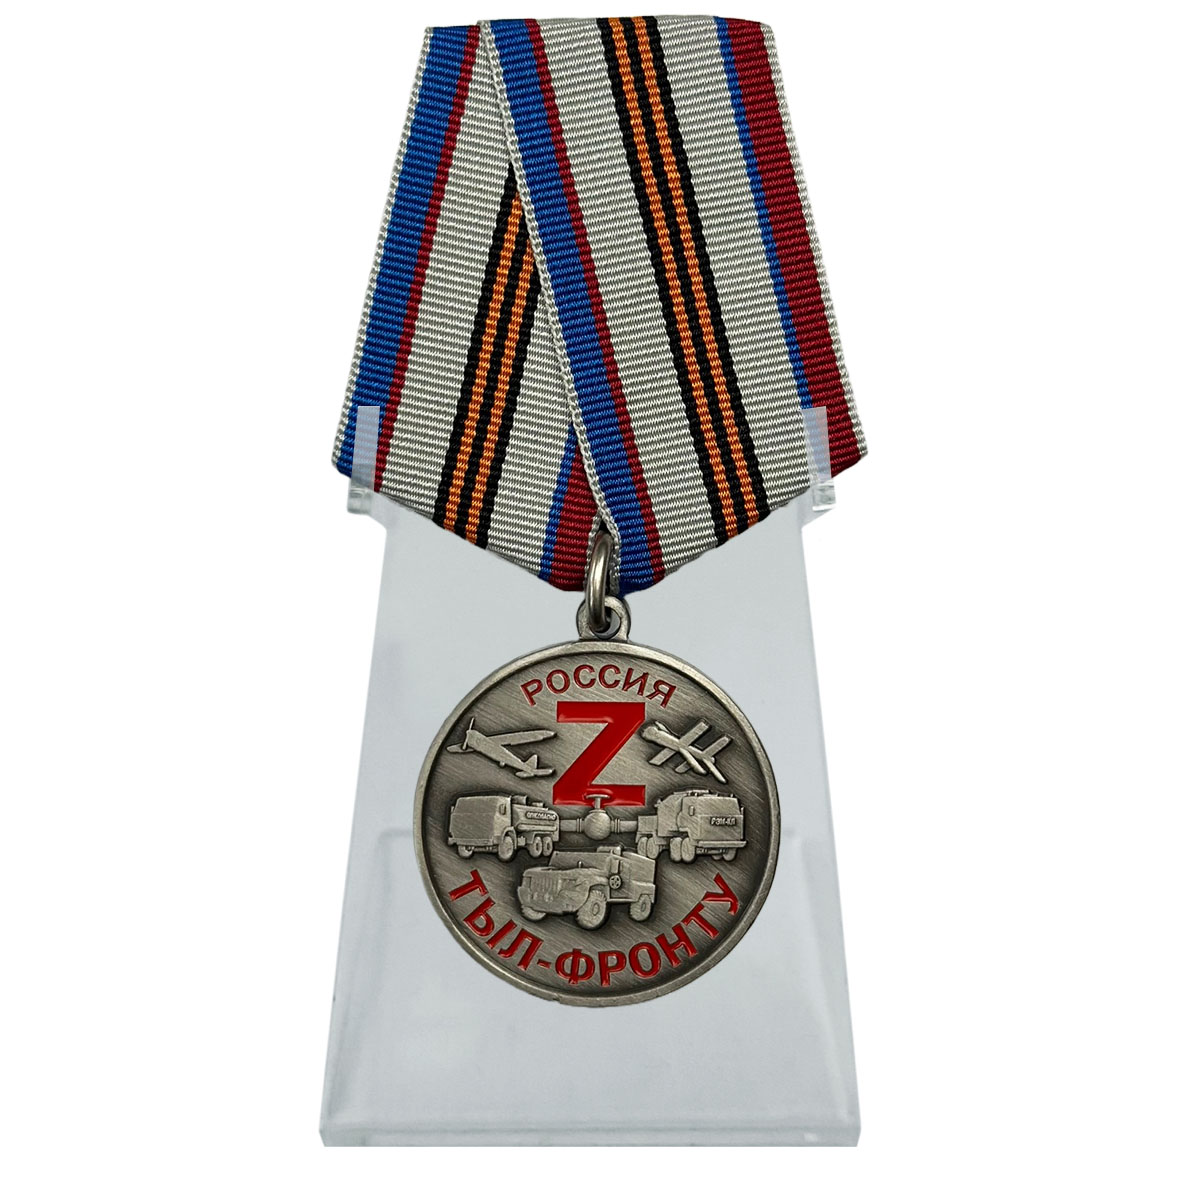 Купить медаль Z "Тыл-фронту" на подставке